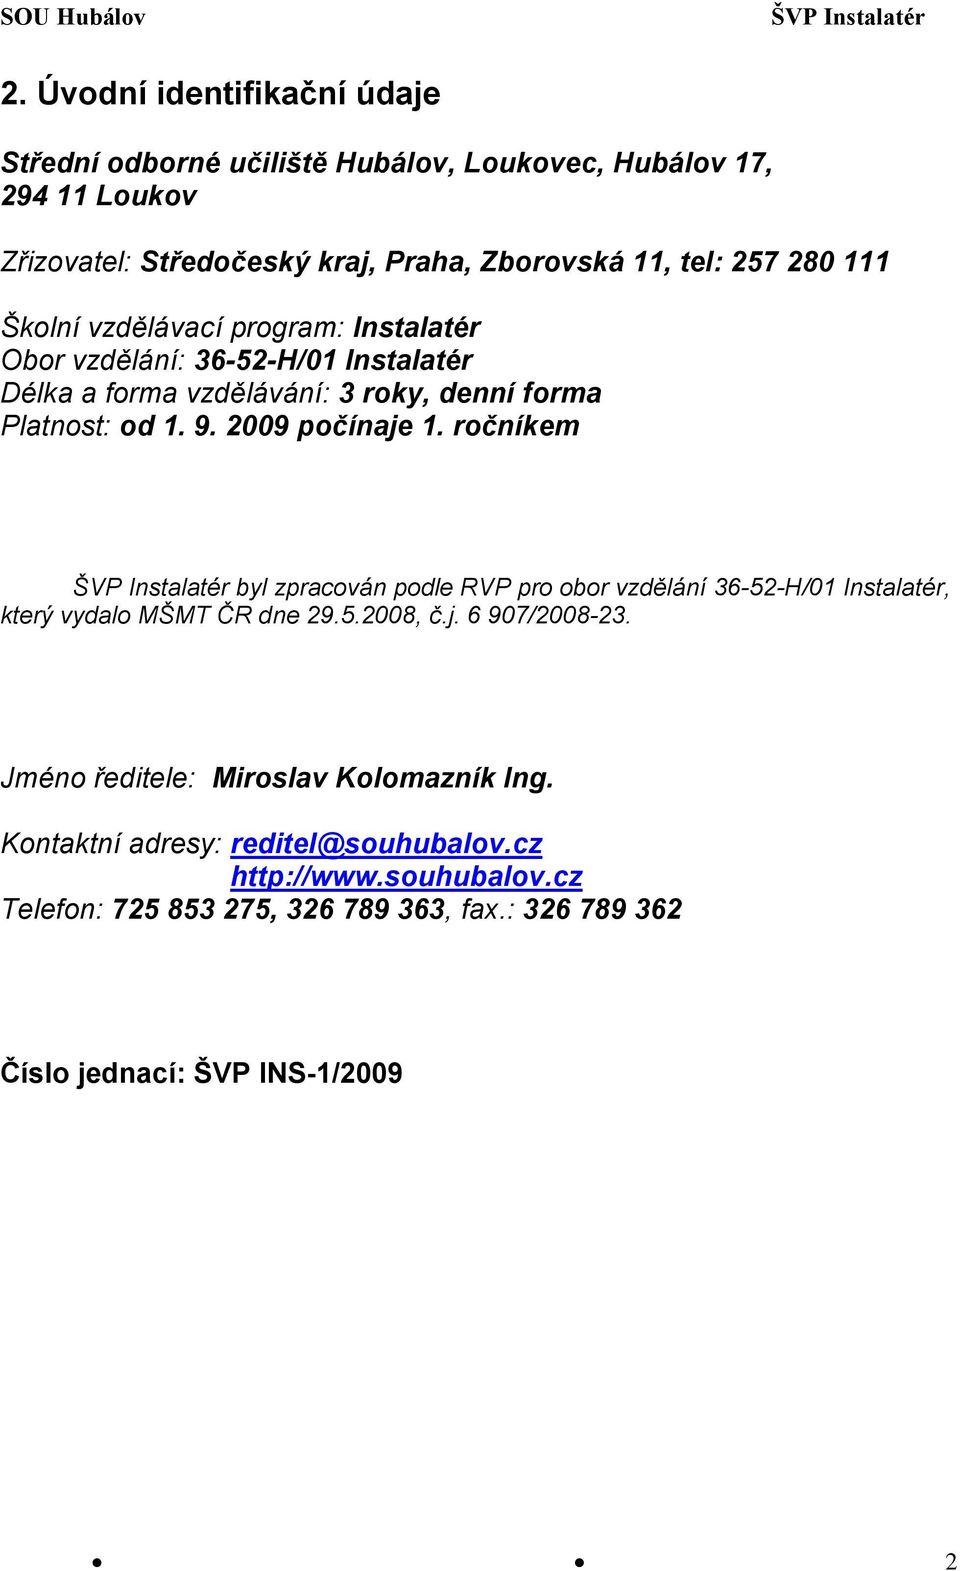 2009 počínaje 1. ročníkem byl zpracován podle RVP pro obor vzdělání 36-52-H/01 Instalatér, který vydalo MŠMT ČR dne 29.5.2008, č.j. 6 907/2008-23.